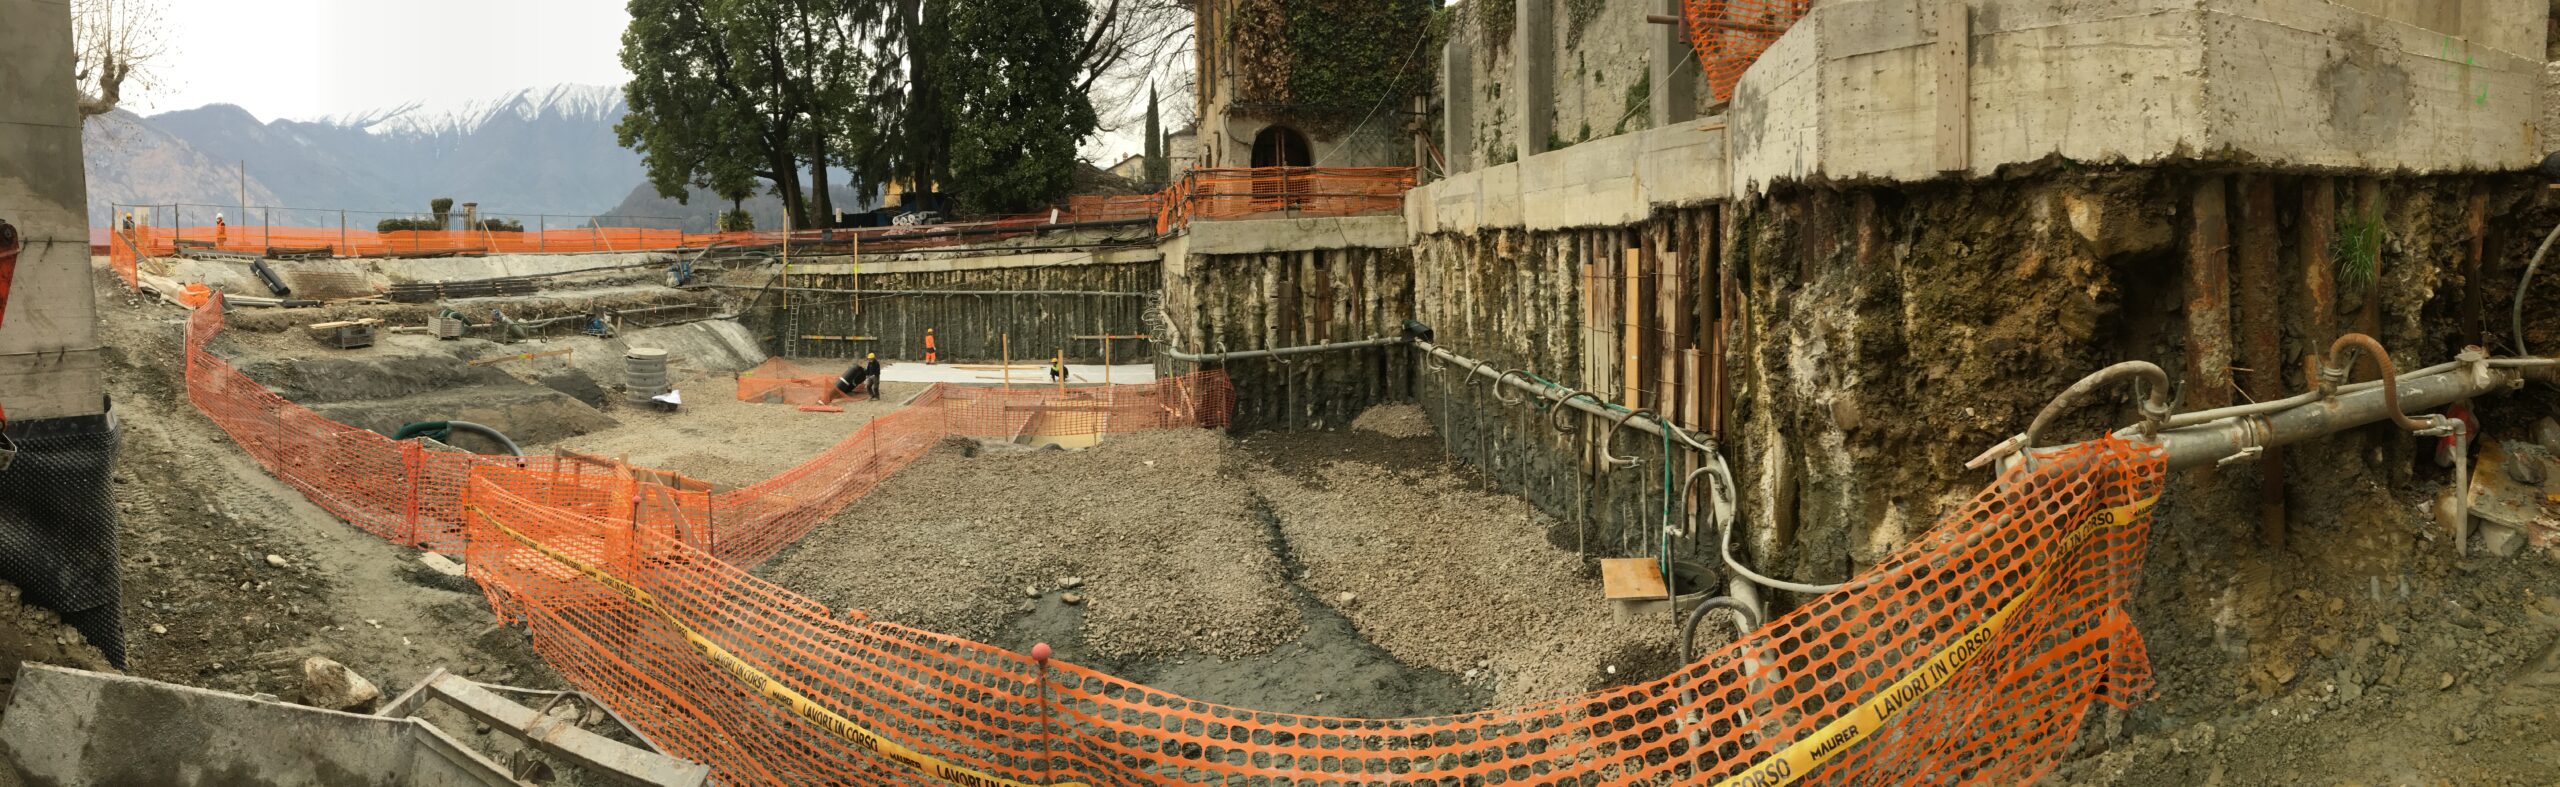 Particolare wellpoint scavo piscina villa ai Platani - Tremezzina